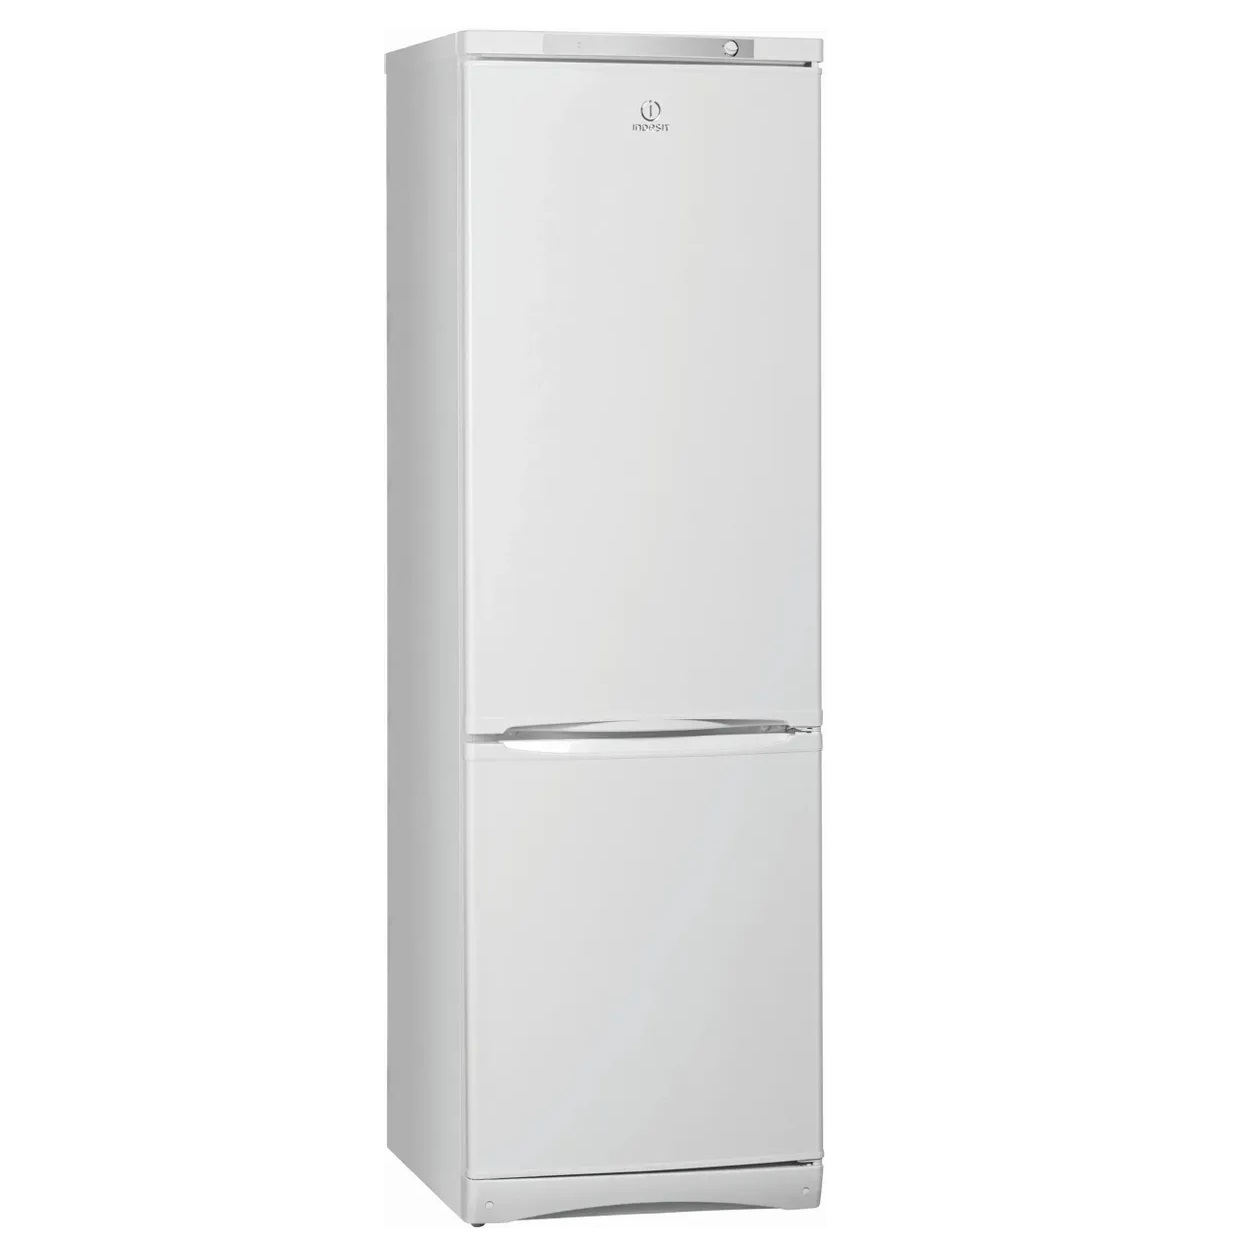 Холодильник Indesit ESP 20 белый, купить в Москве, цены в интернет-магазинах на Мегамаркет